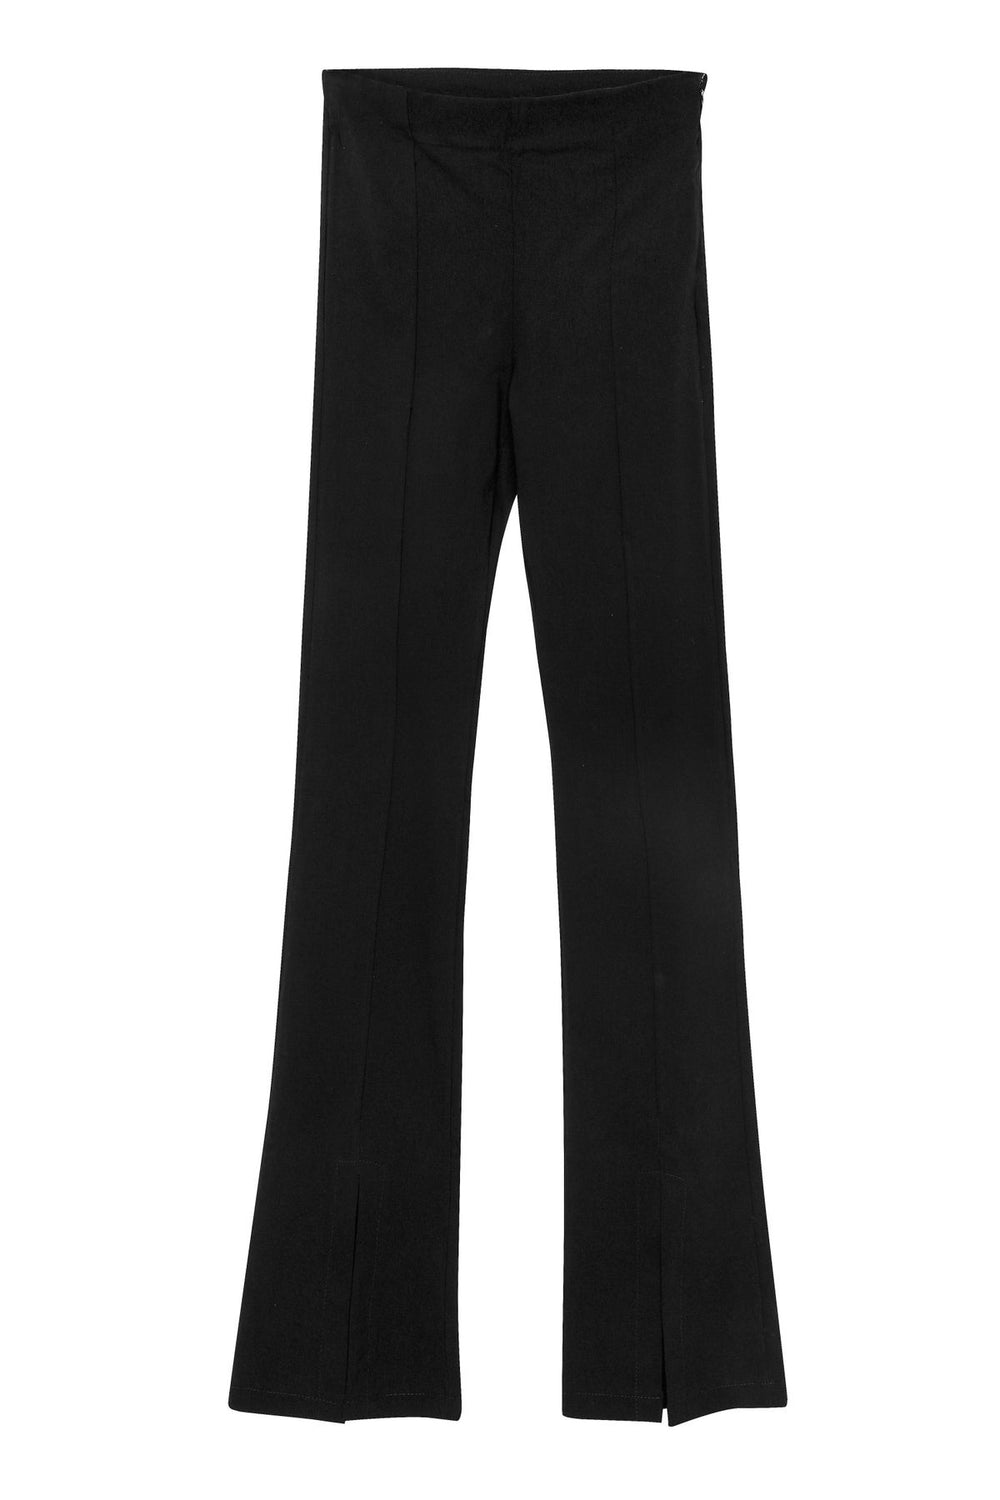 Side Zipper High Waist Trousers Black